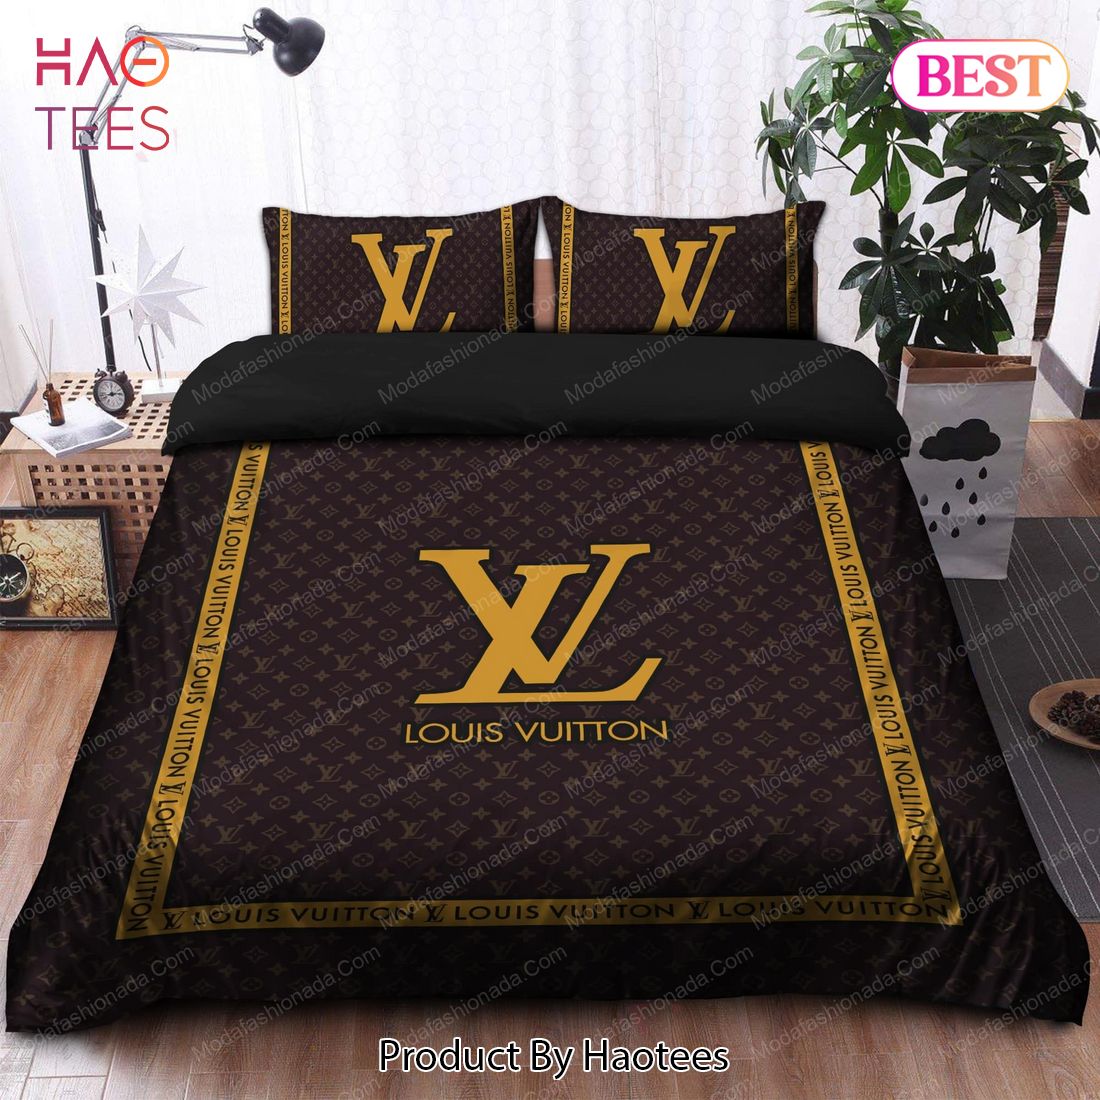 Buy Louis Vuitton Brands Bedding Sets 01 Bed Sets, Bedroom Sets